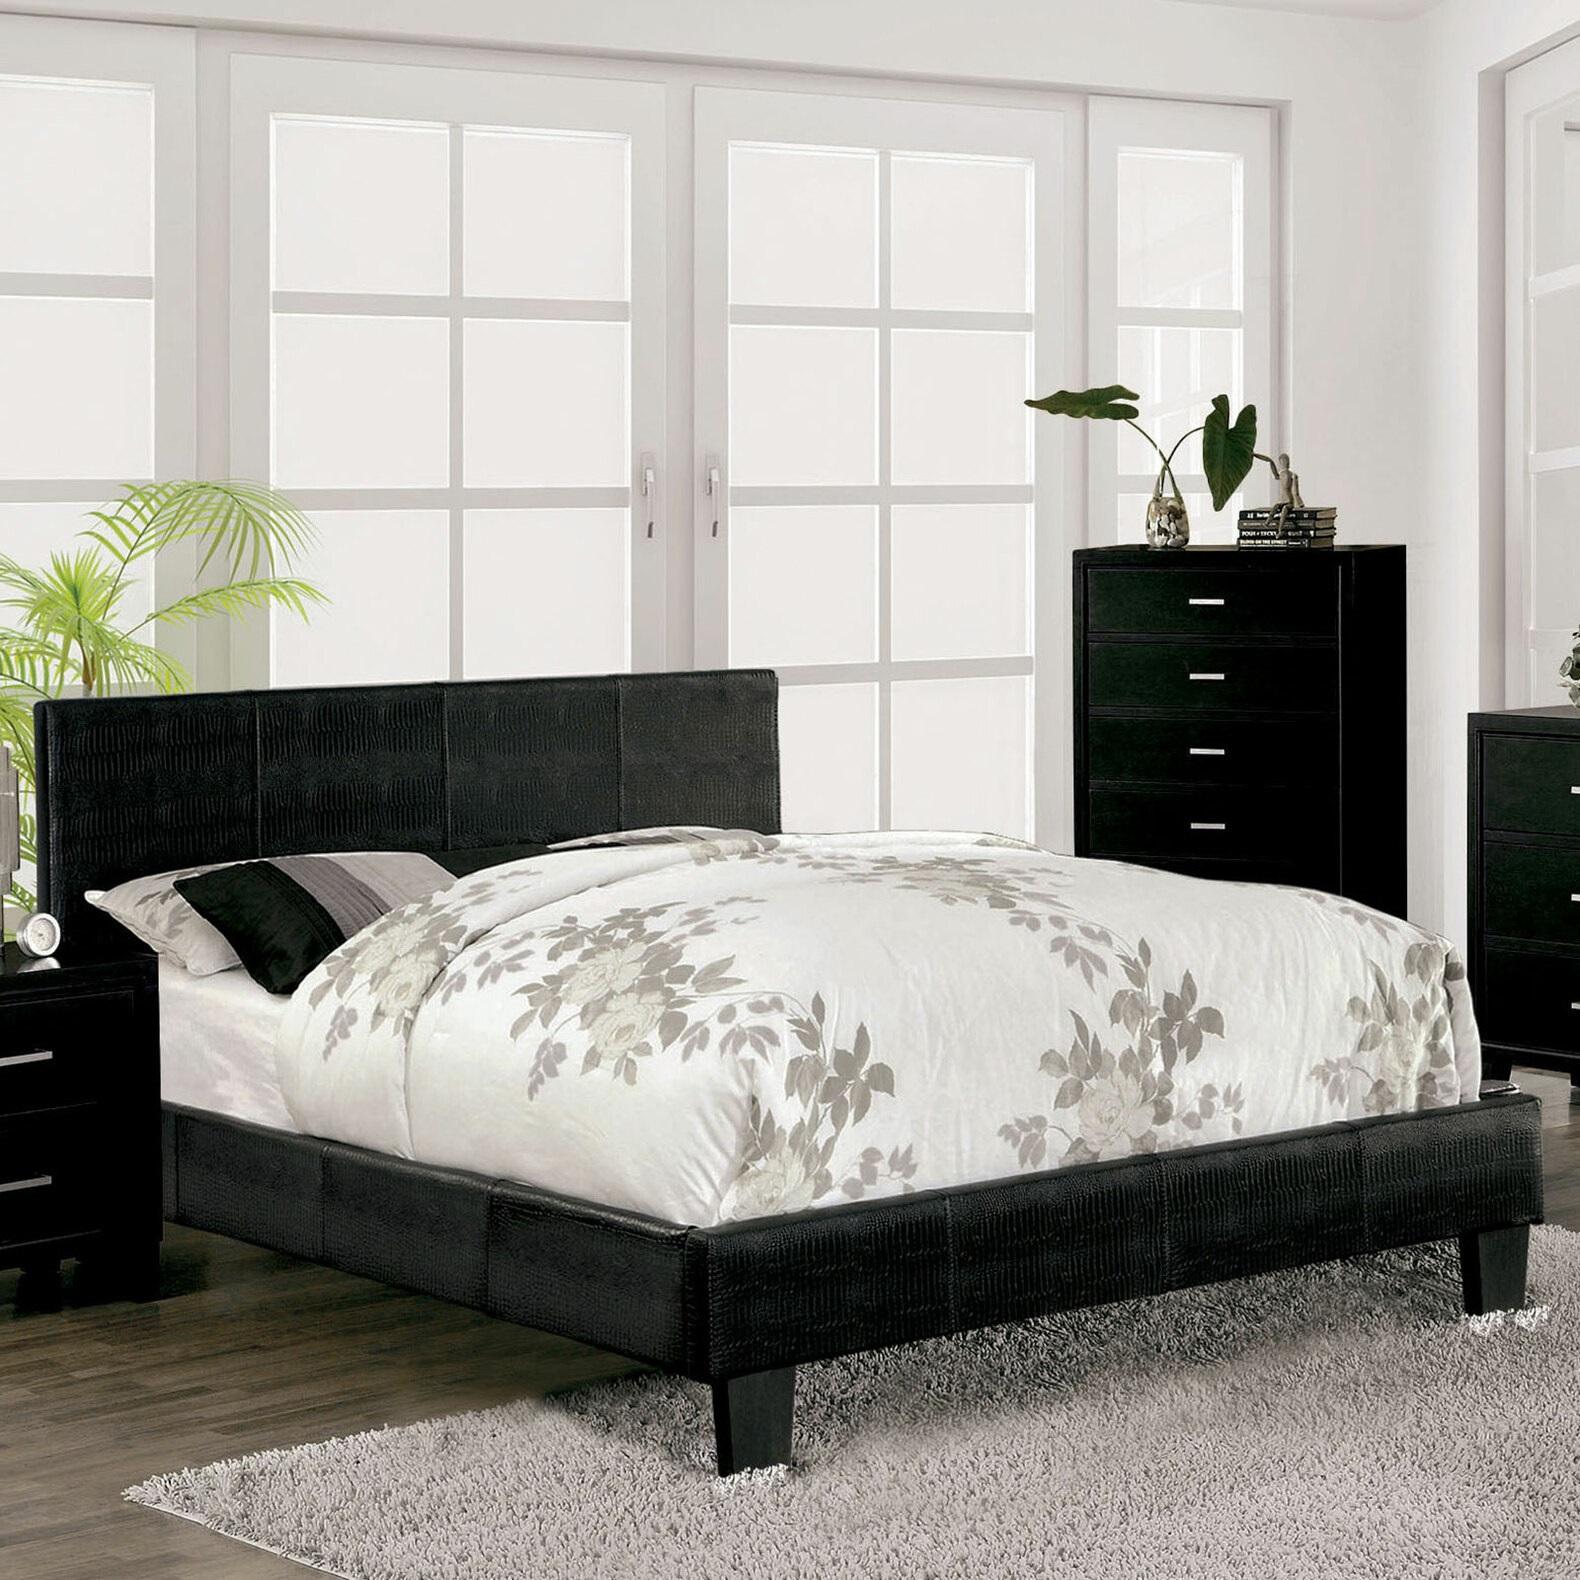 

    
Contemporary Black Solid Wood Queen Bedroom Set 6pcs Furniture of America CM7793BK-Q Wallen
